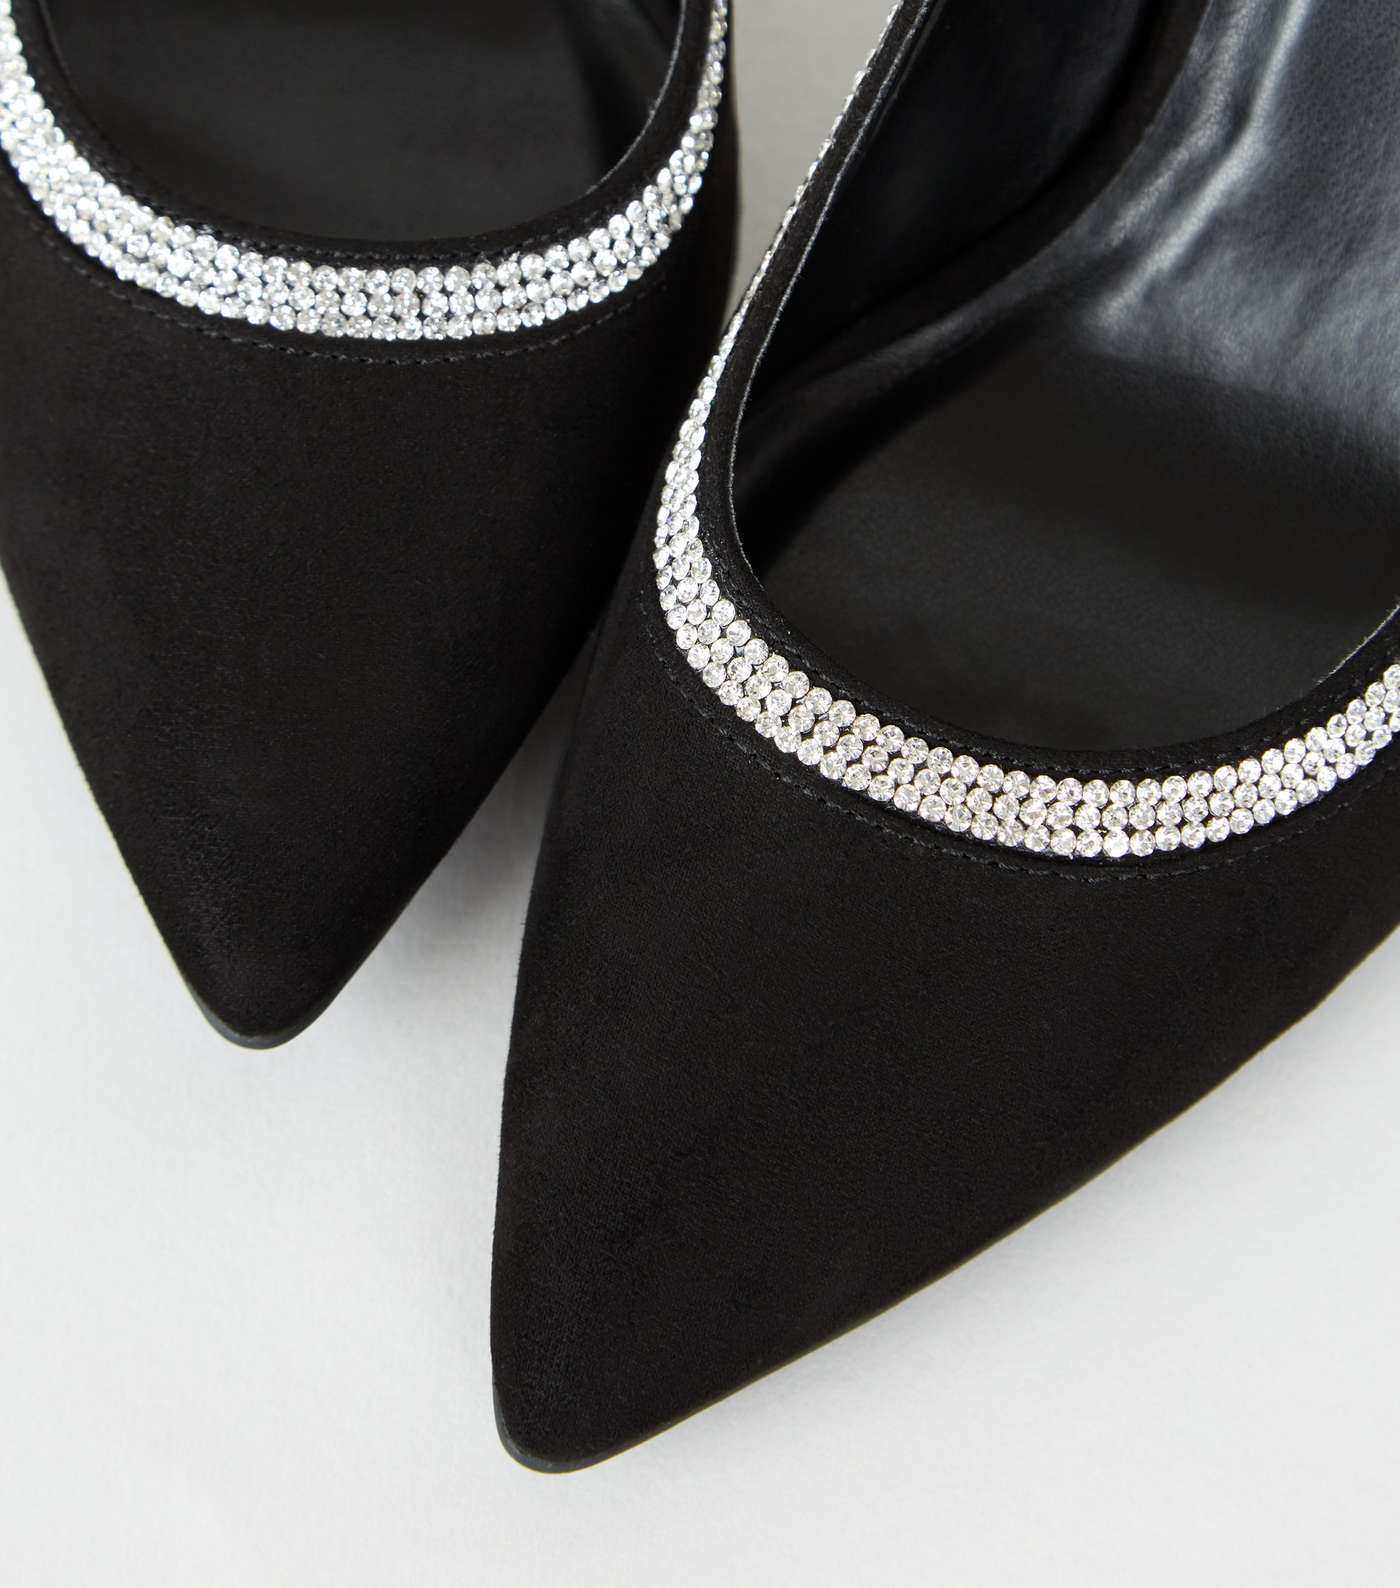 Black Suedette Diamanté Trim Court Shoes Image 4